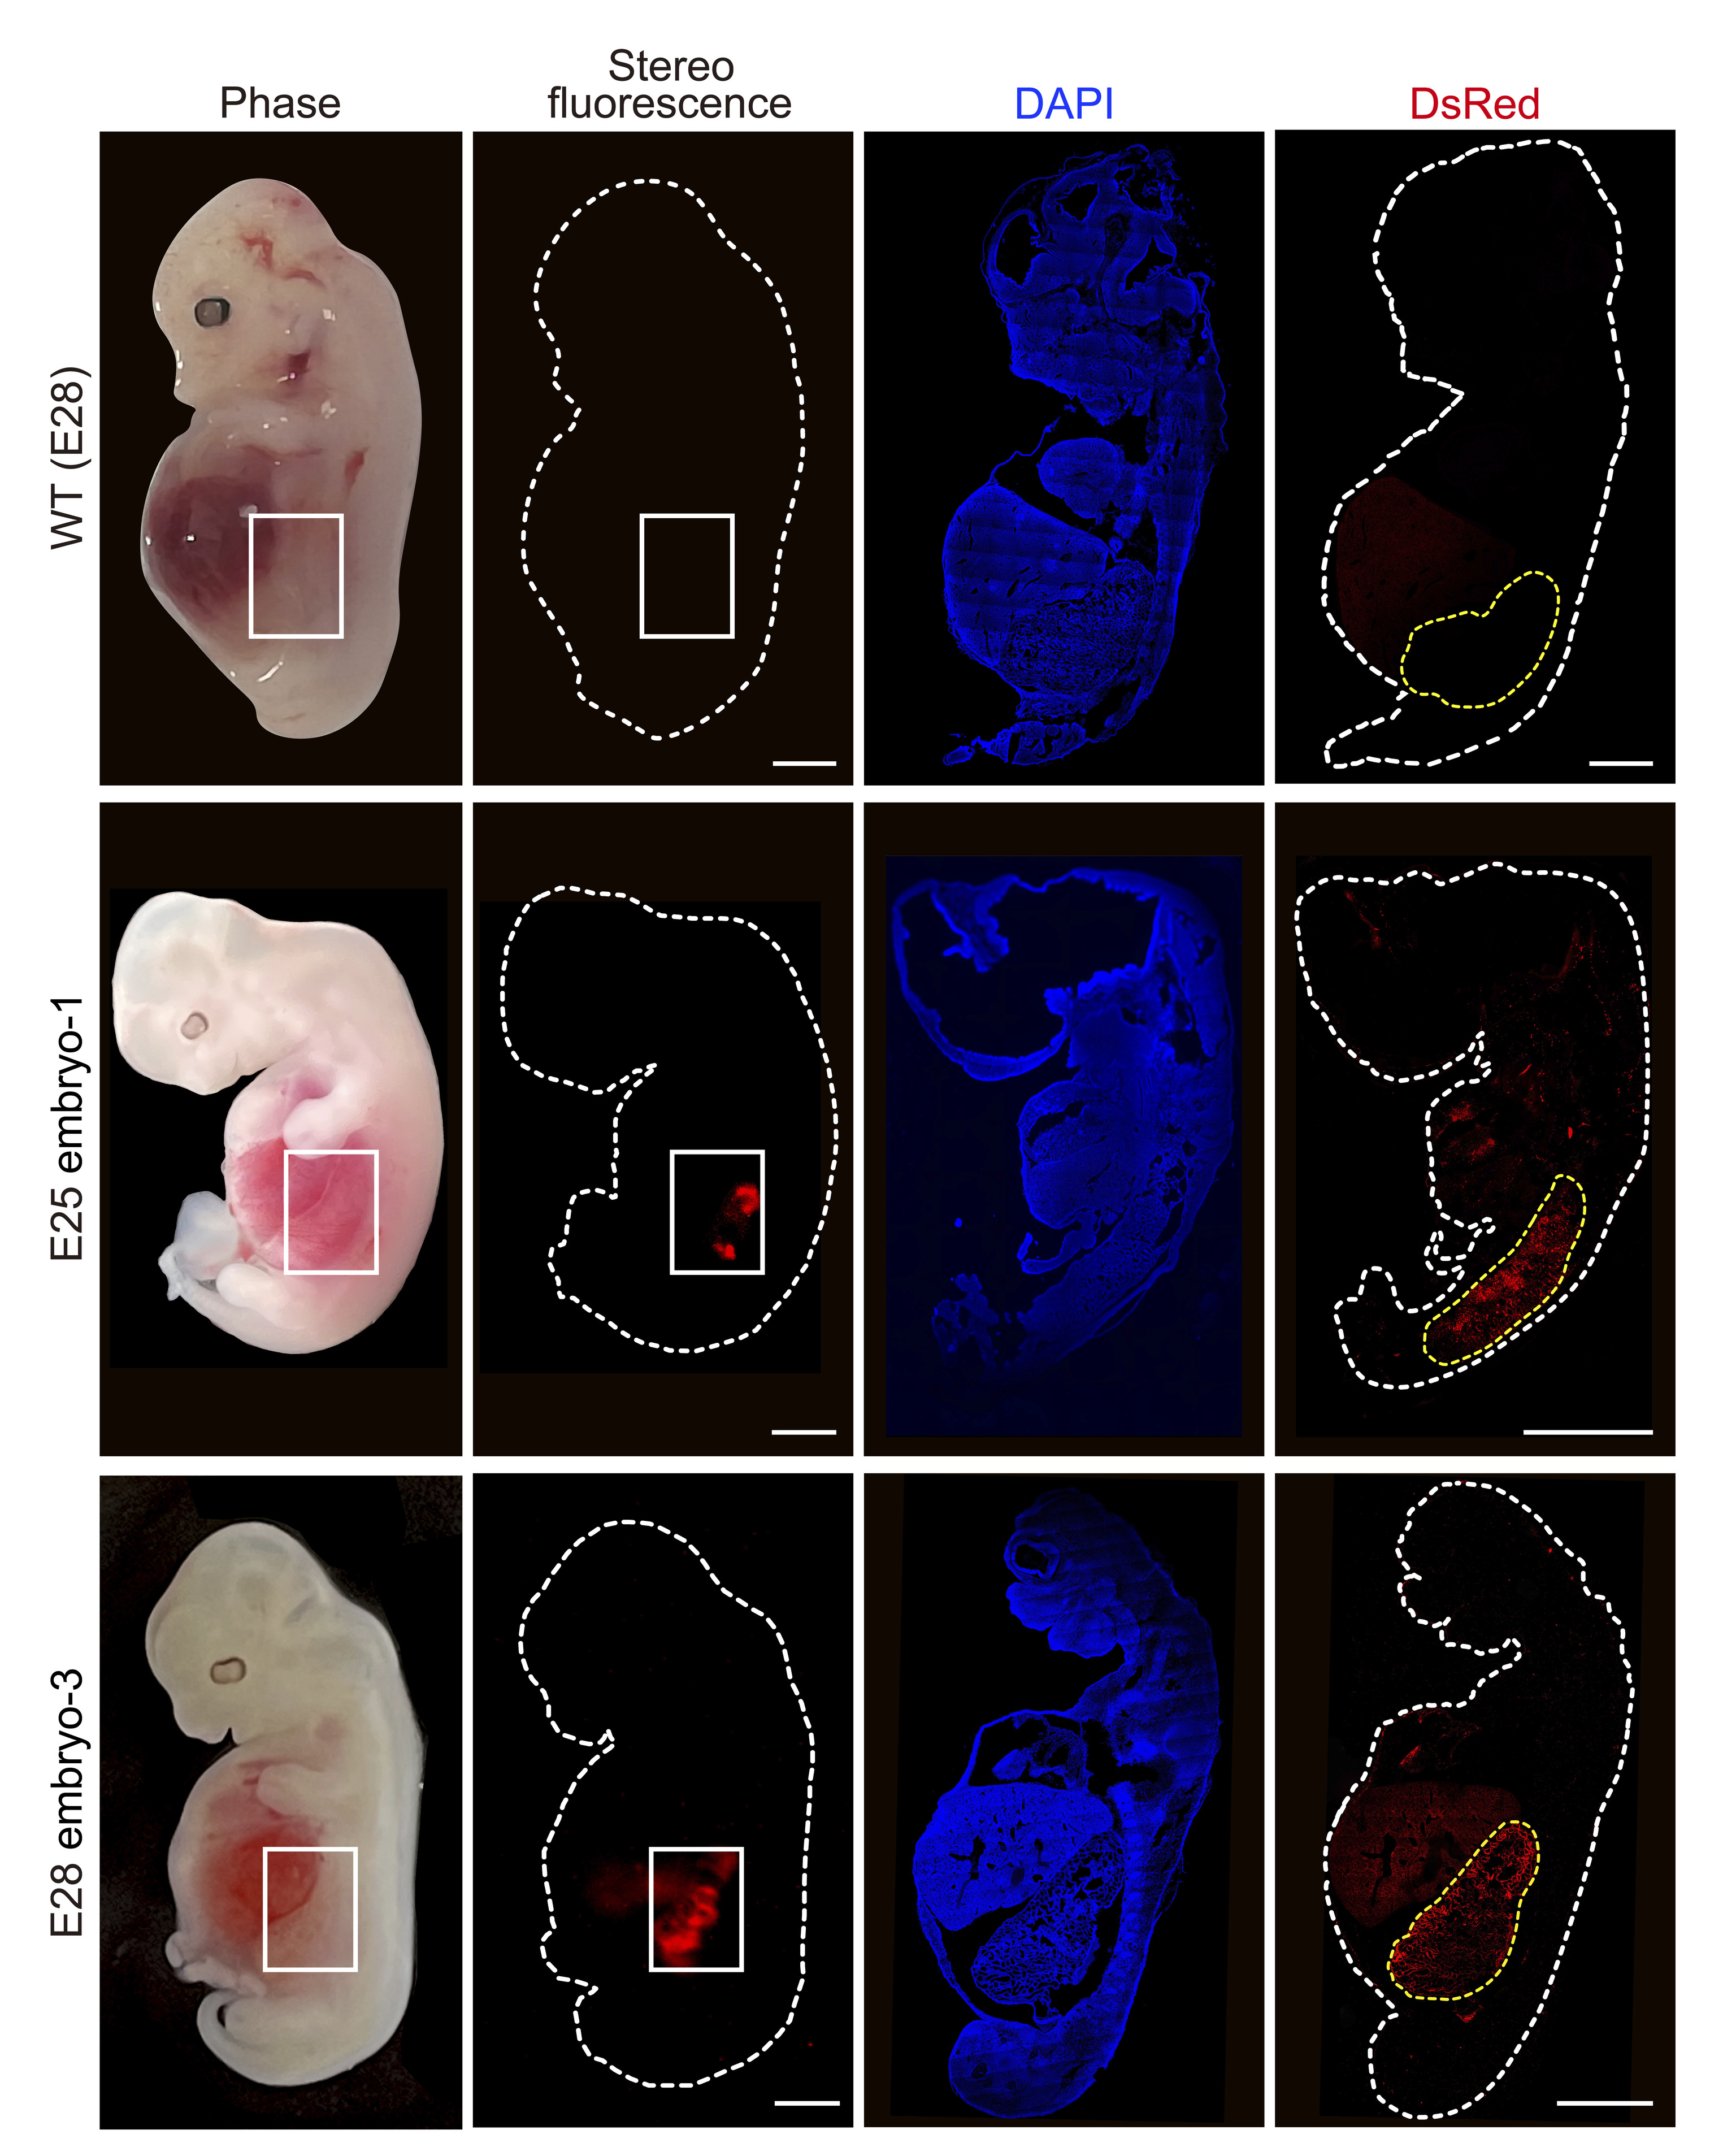 La imagen muestra células de riñón humanizadas (fluorescencia roja) dentro del embrión en comparación con un embrión de cerdo "salvaje".